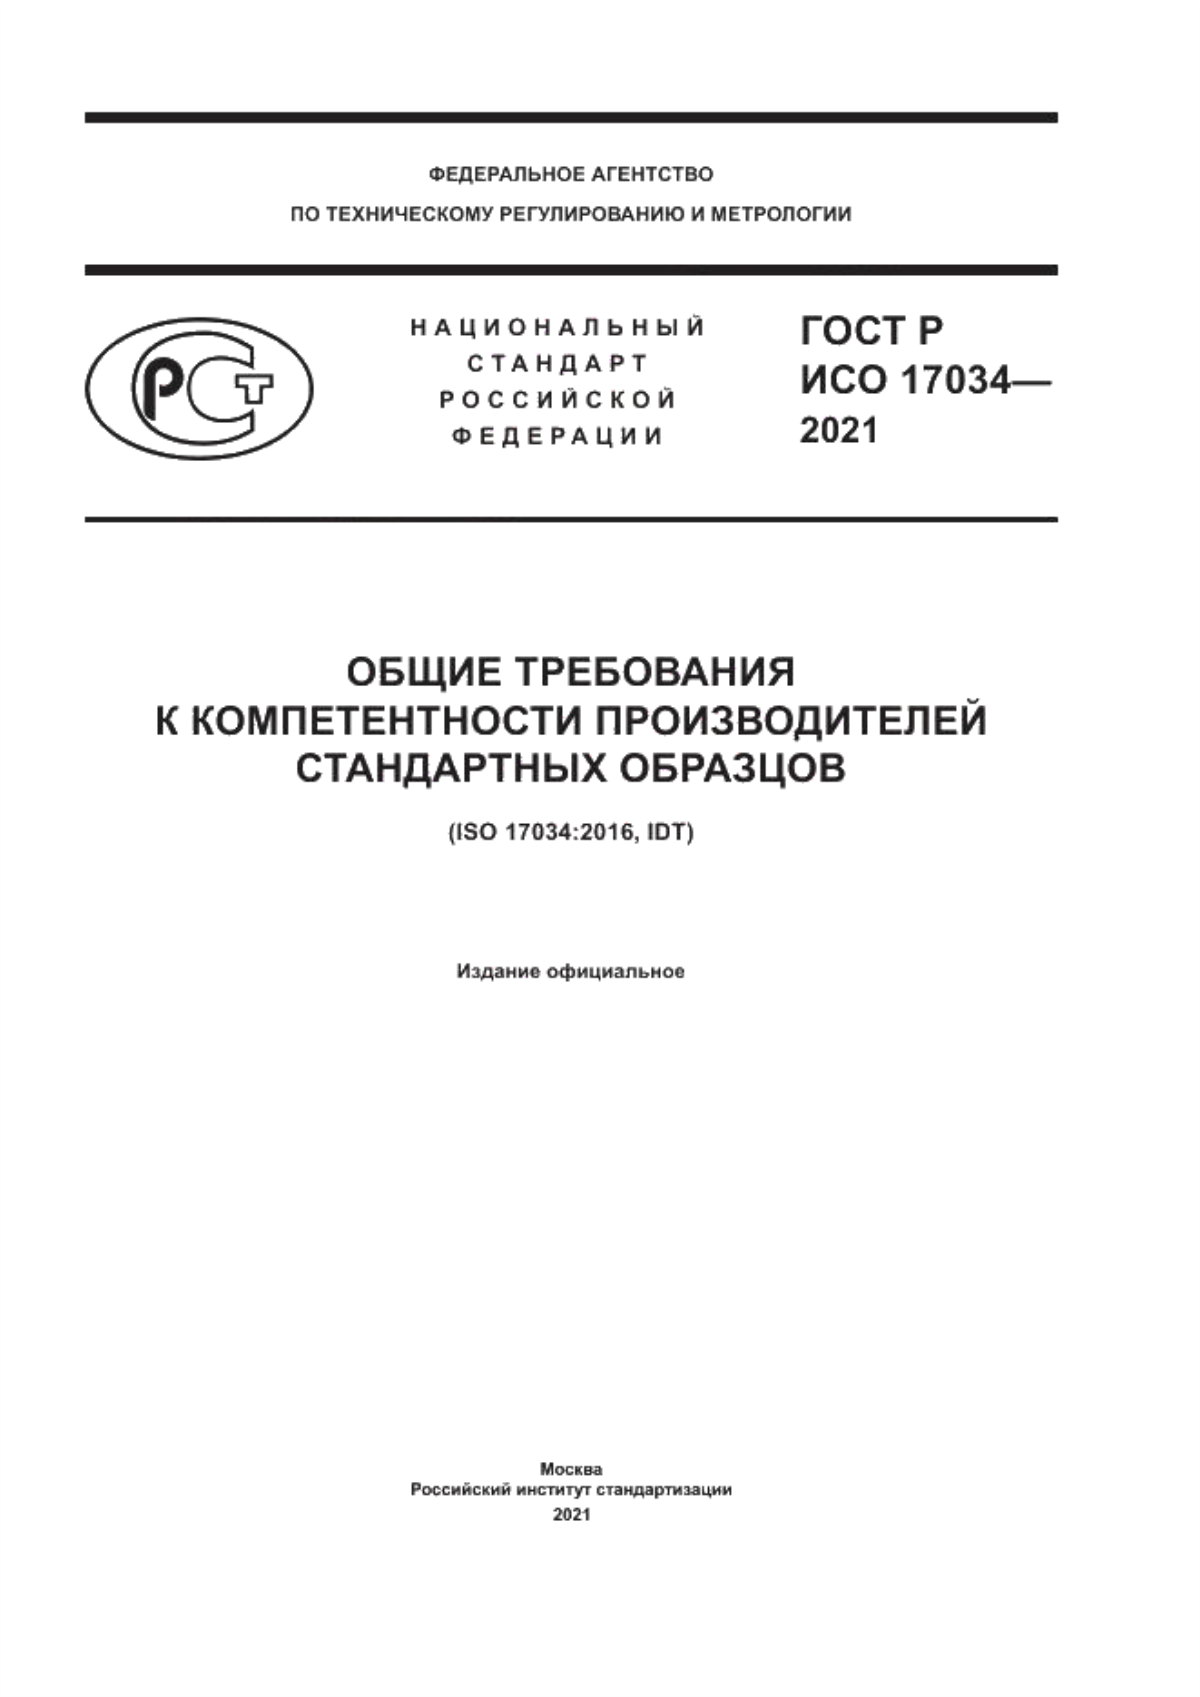 ГОСТ Р ИСО 17034-2021 Общие требования к компетентности производителей стандартных образцов